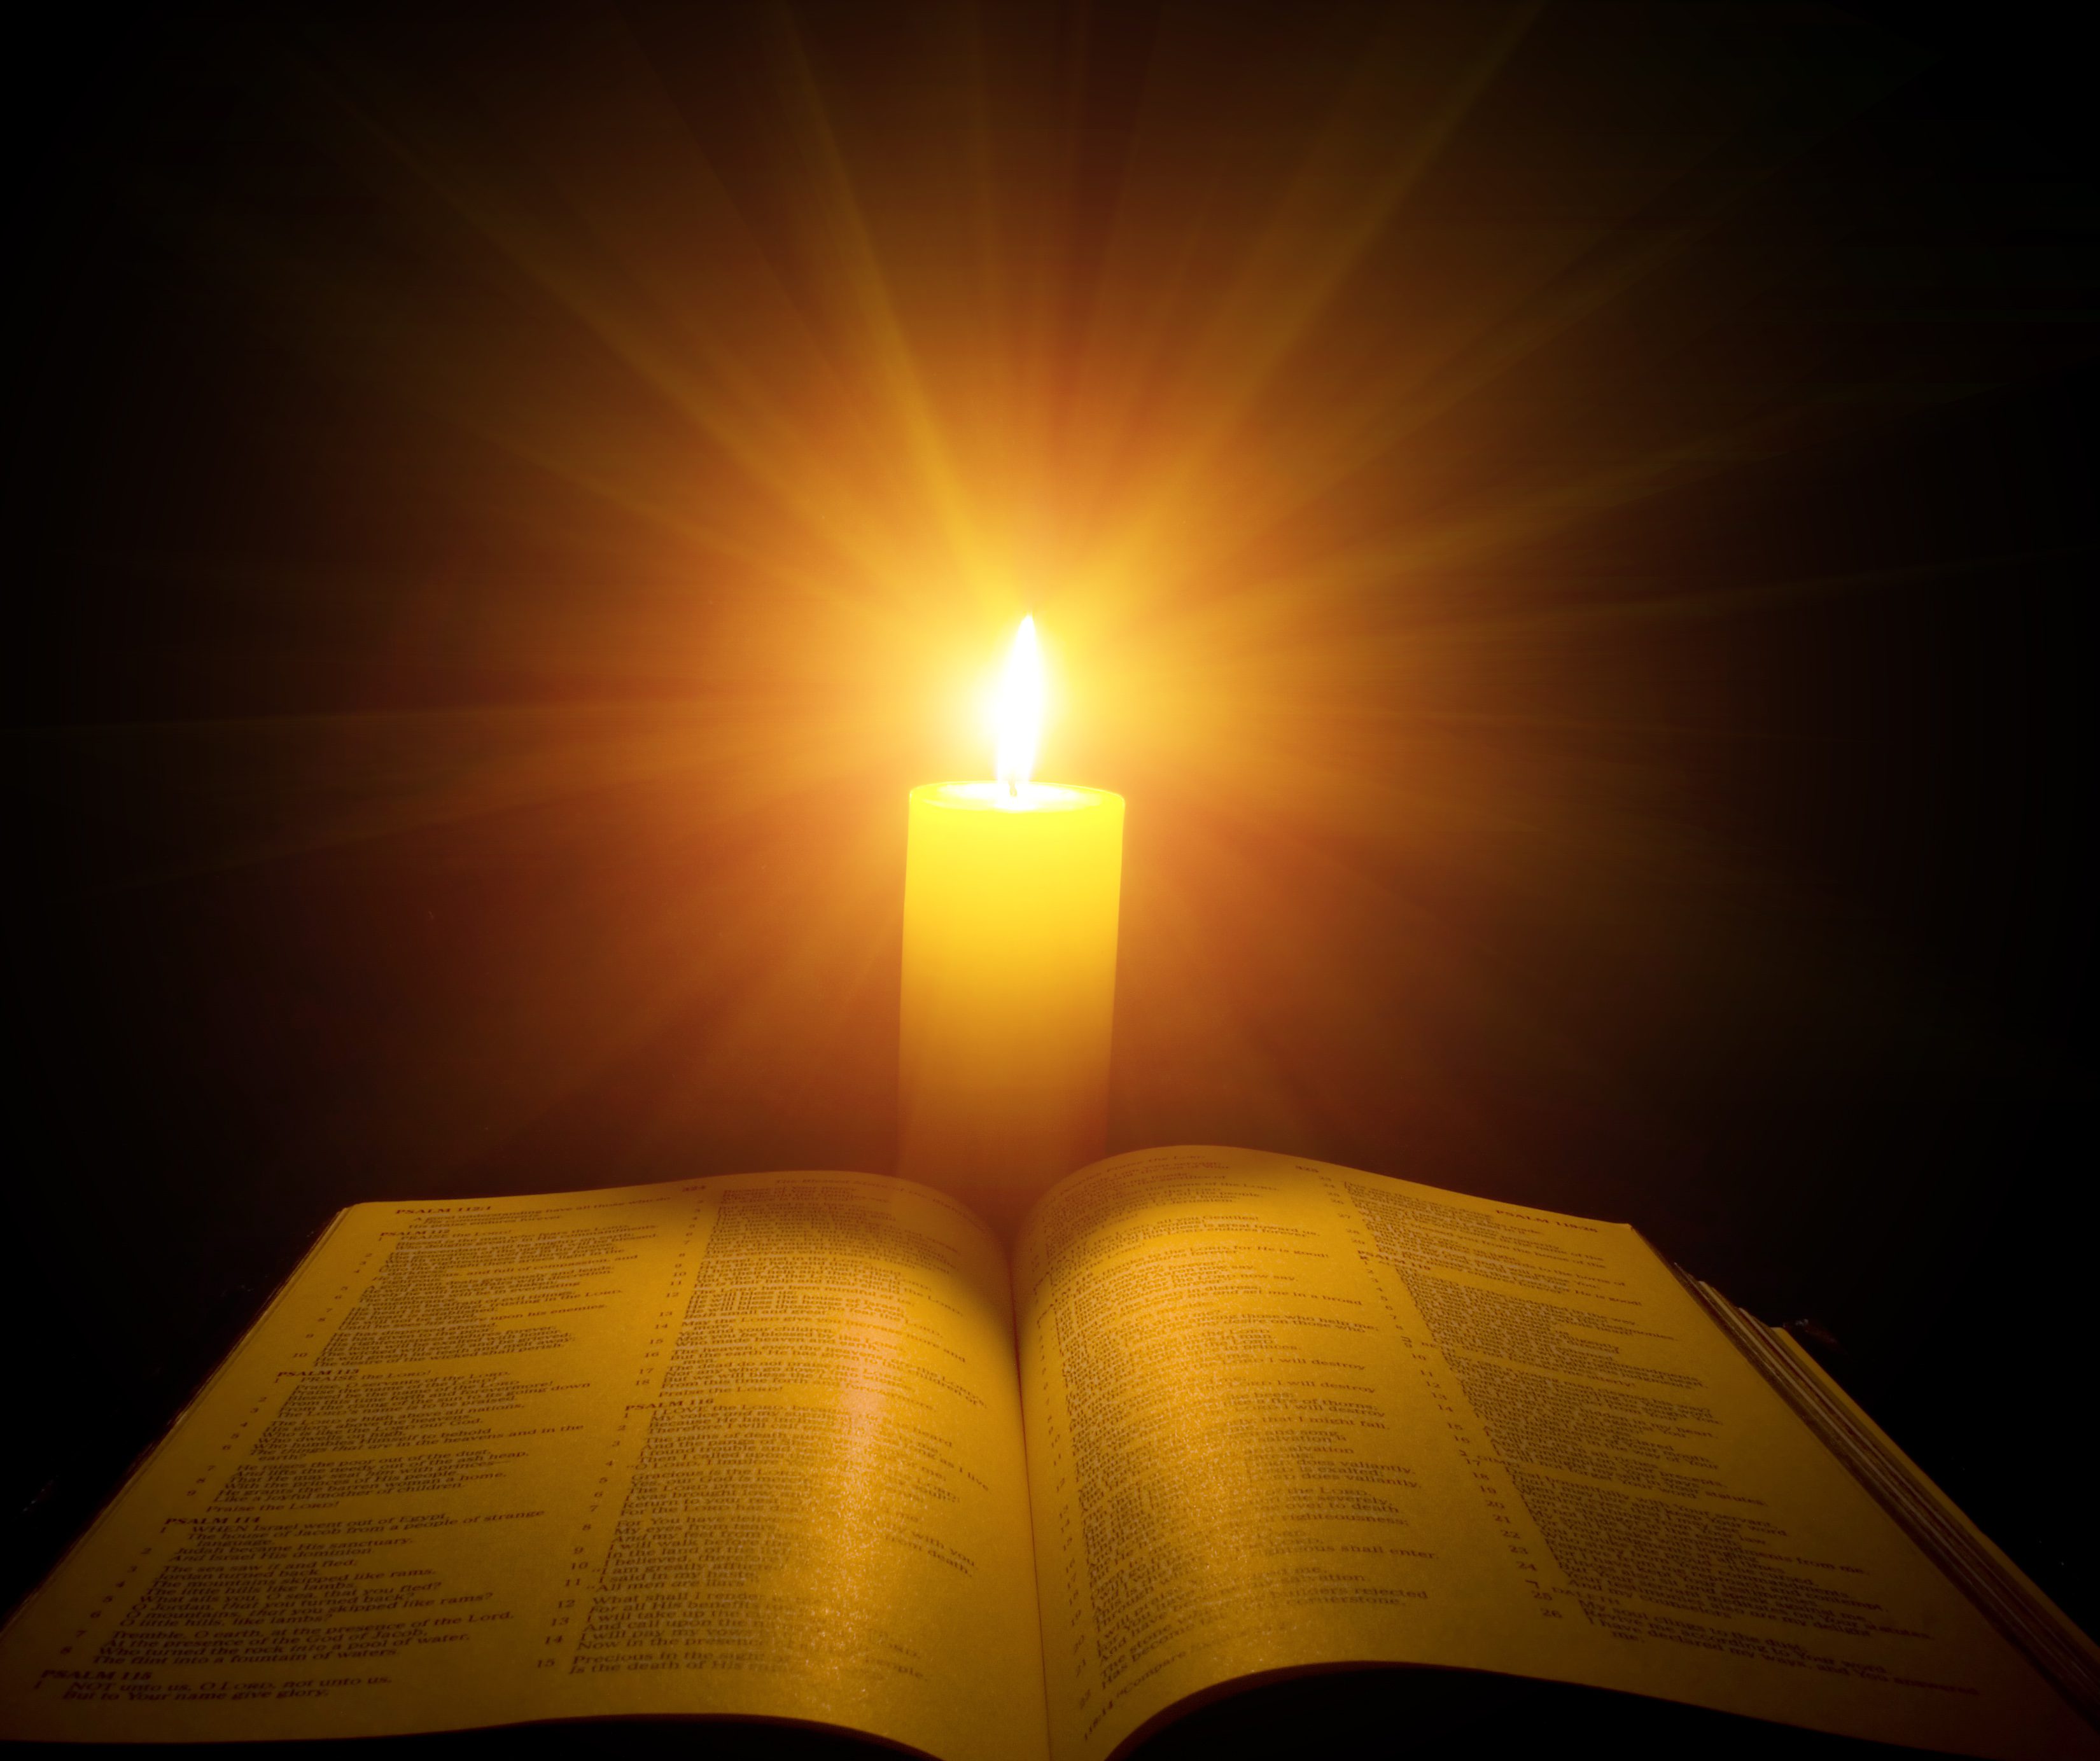 Книга увидела свет. Магия псалмов красивая картинка. Светлый фон со свечой и книгами.